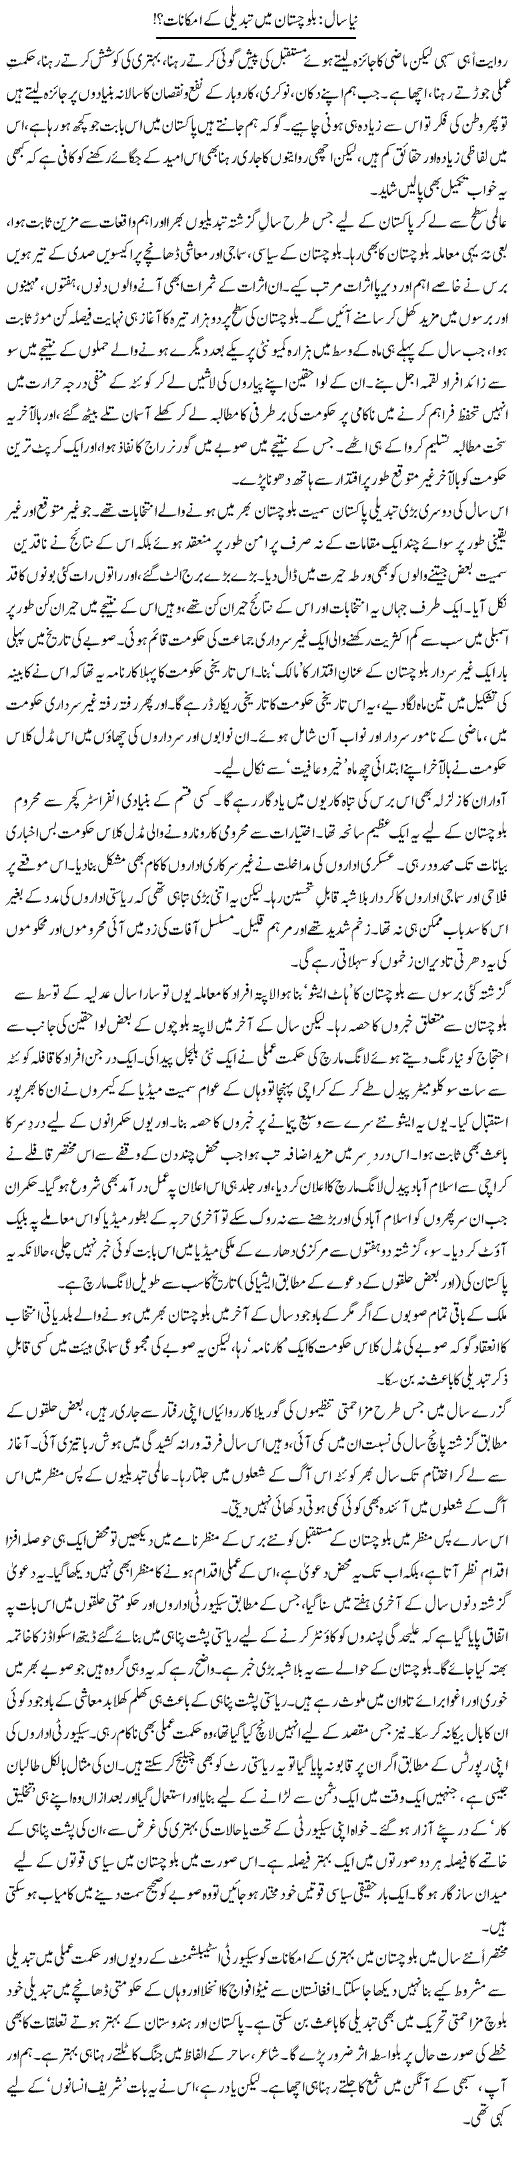 Naya Saal Balochistan Main Tabdeeli K Imkanaat | Abid Mir | Daily Urdu Columns